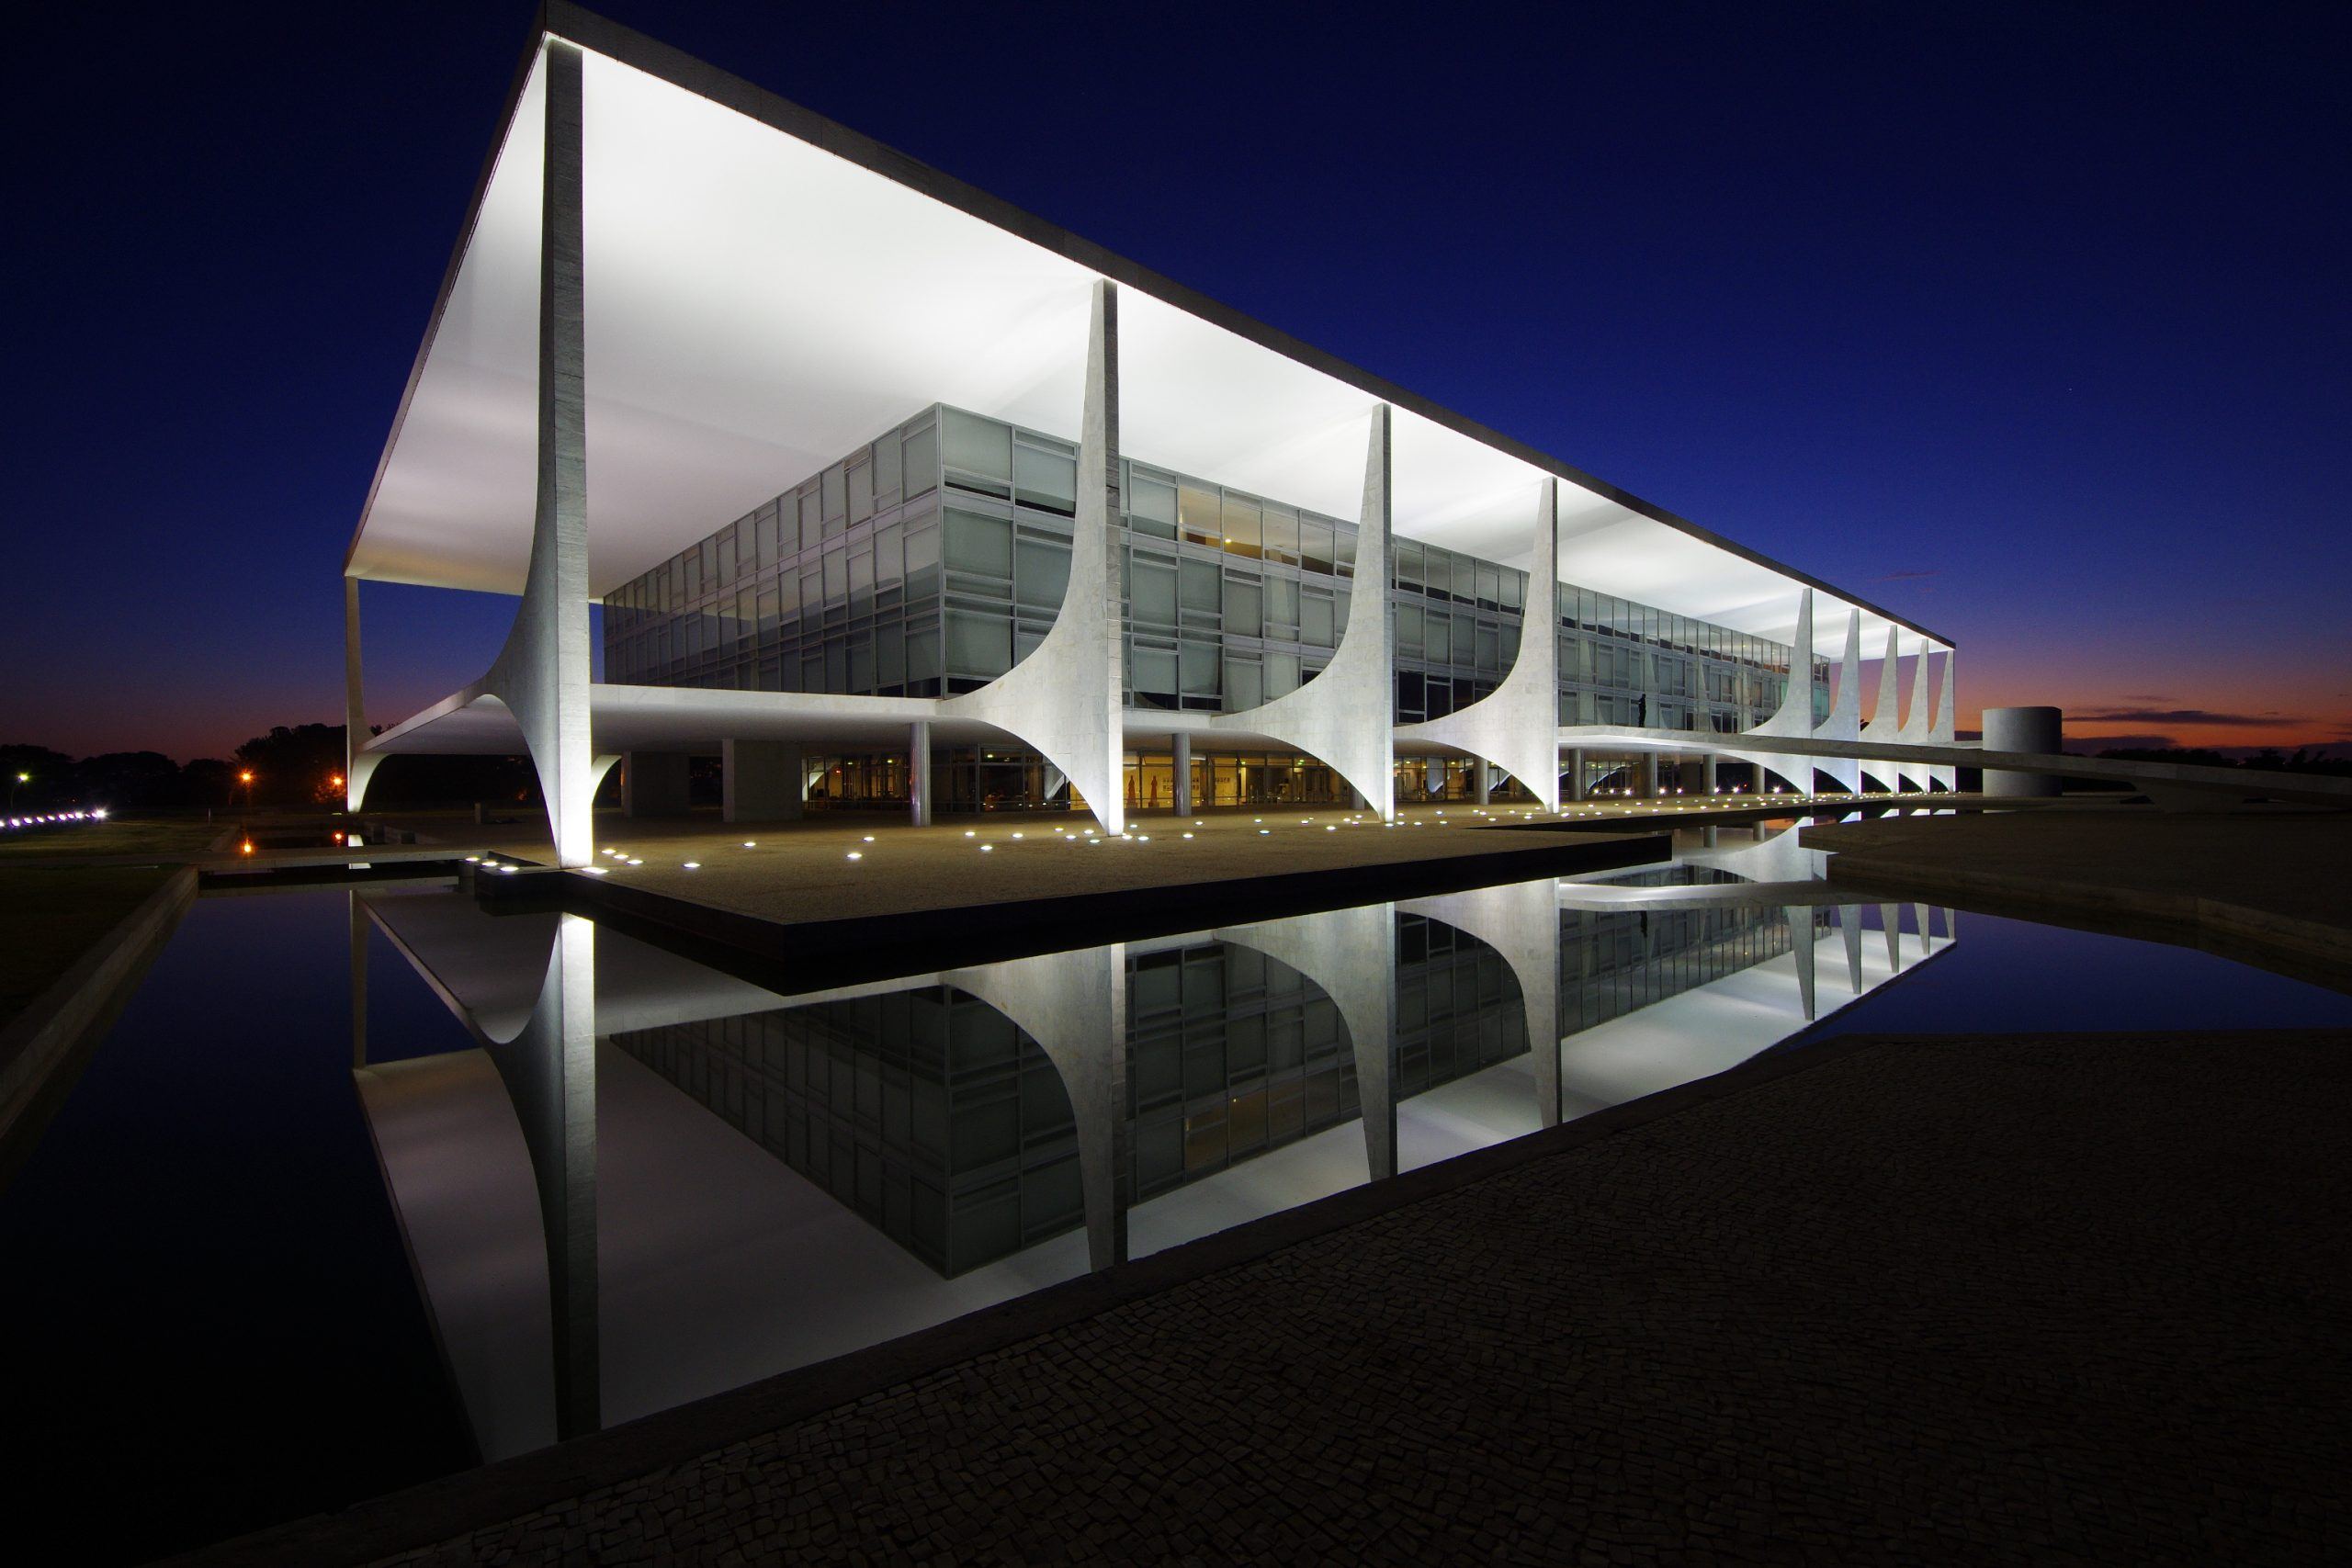 Brasilia's works